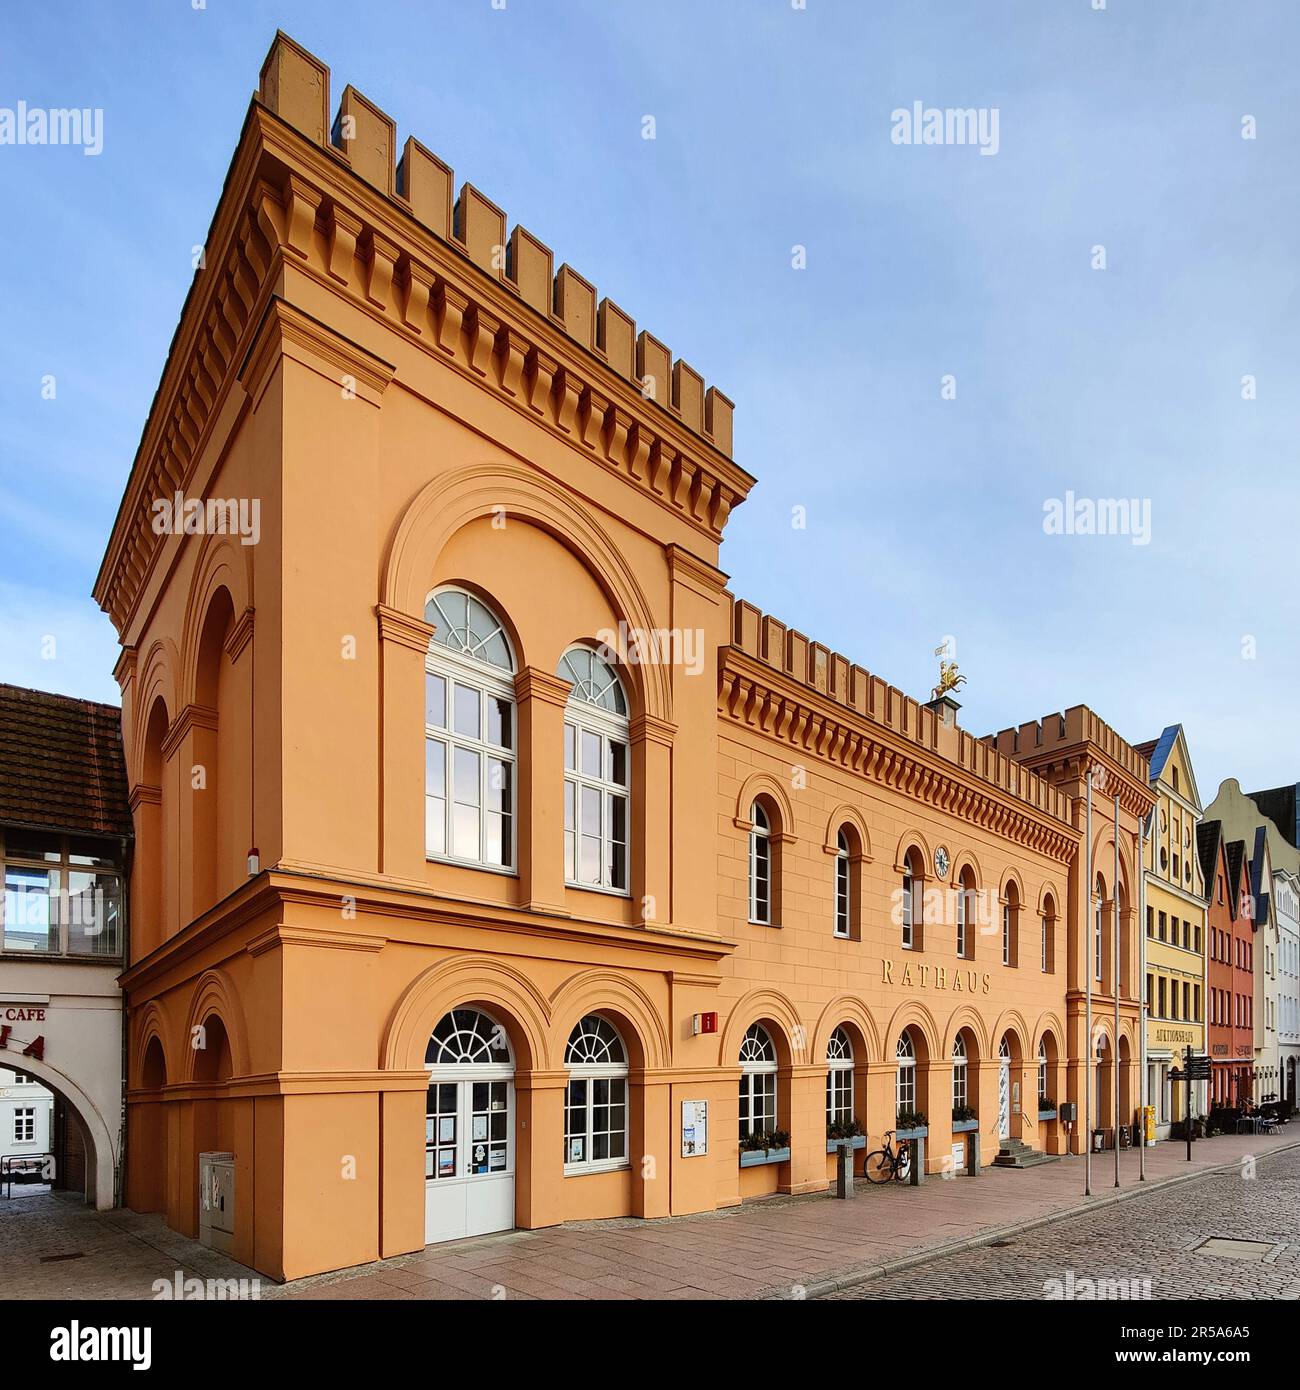 Altes Rathaus, Fassade im Tudorstil, mit zwei Risaliten an der Ecke, Deutschland, Mecklenburg-Vorpommern, Schwerin Stockfoto